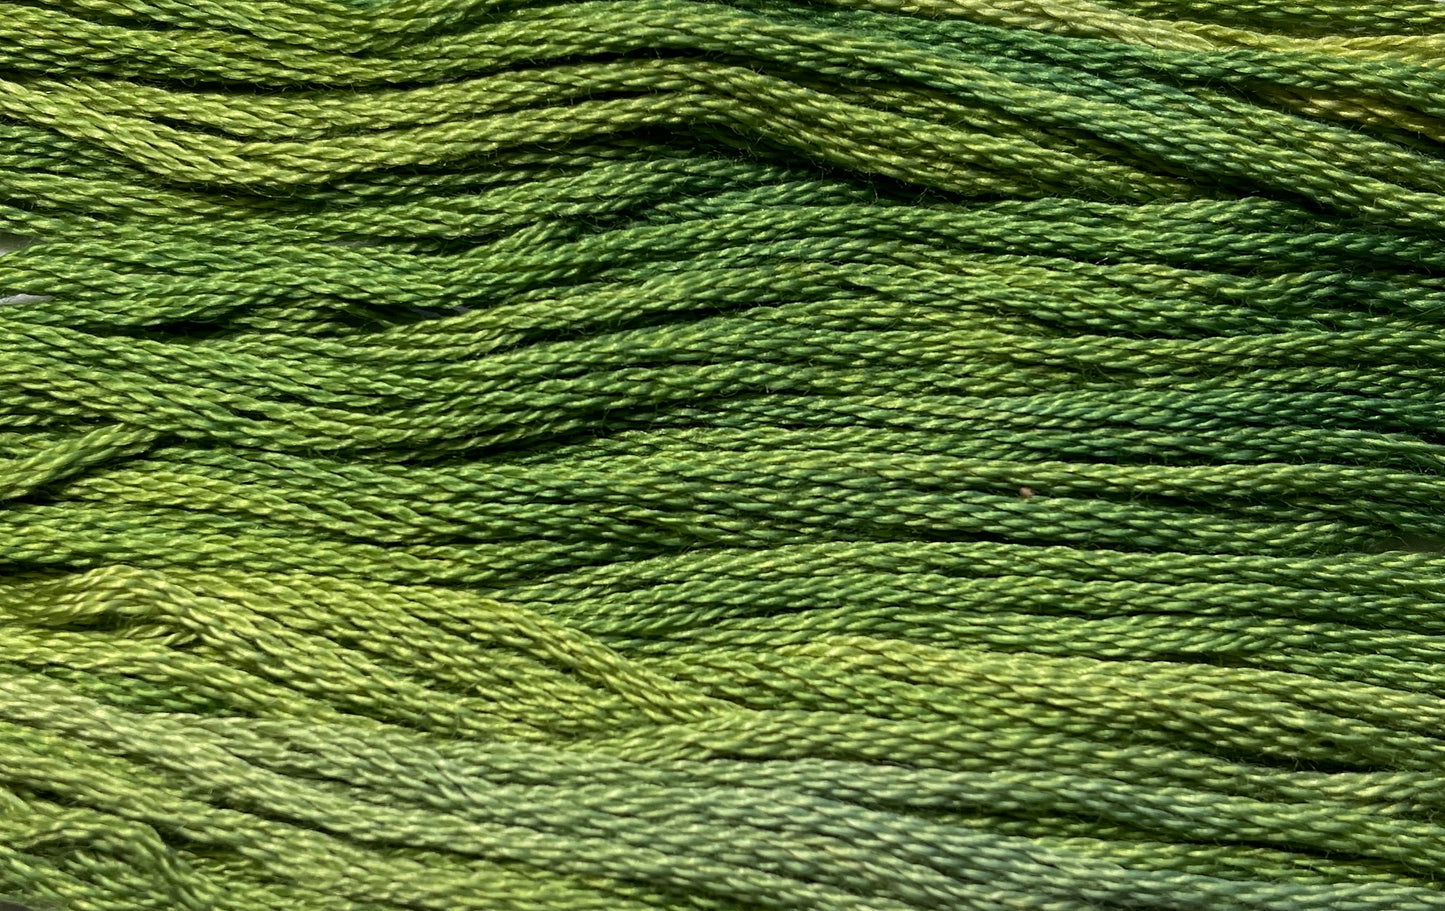 Baby Spinach - Gentle Arts Cotton Thread - 5 yard Skein - Cross Stitch Floss, Thread & Floss, Thread & Floss, The Crafty Grimalkin - A Cross Stitch Store